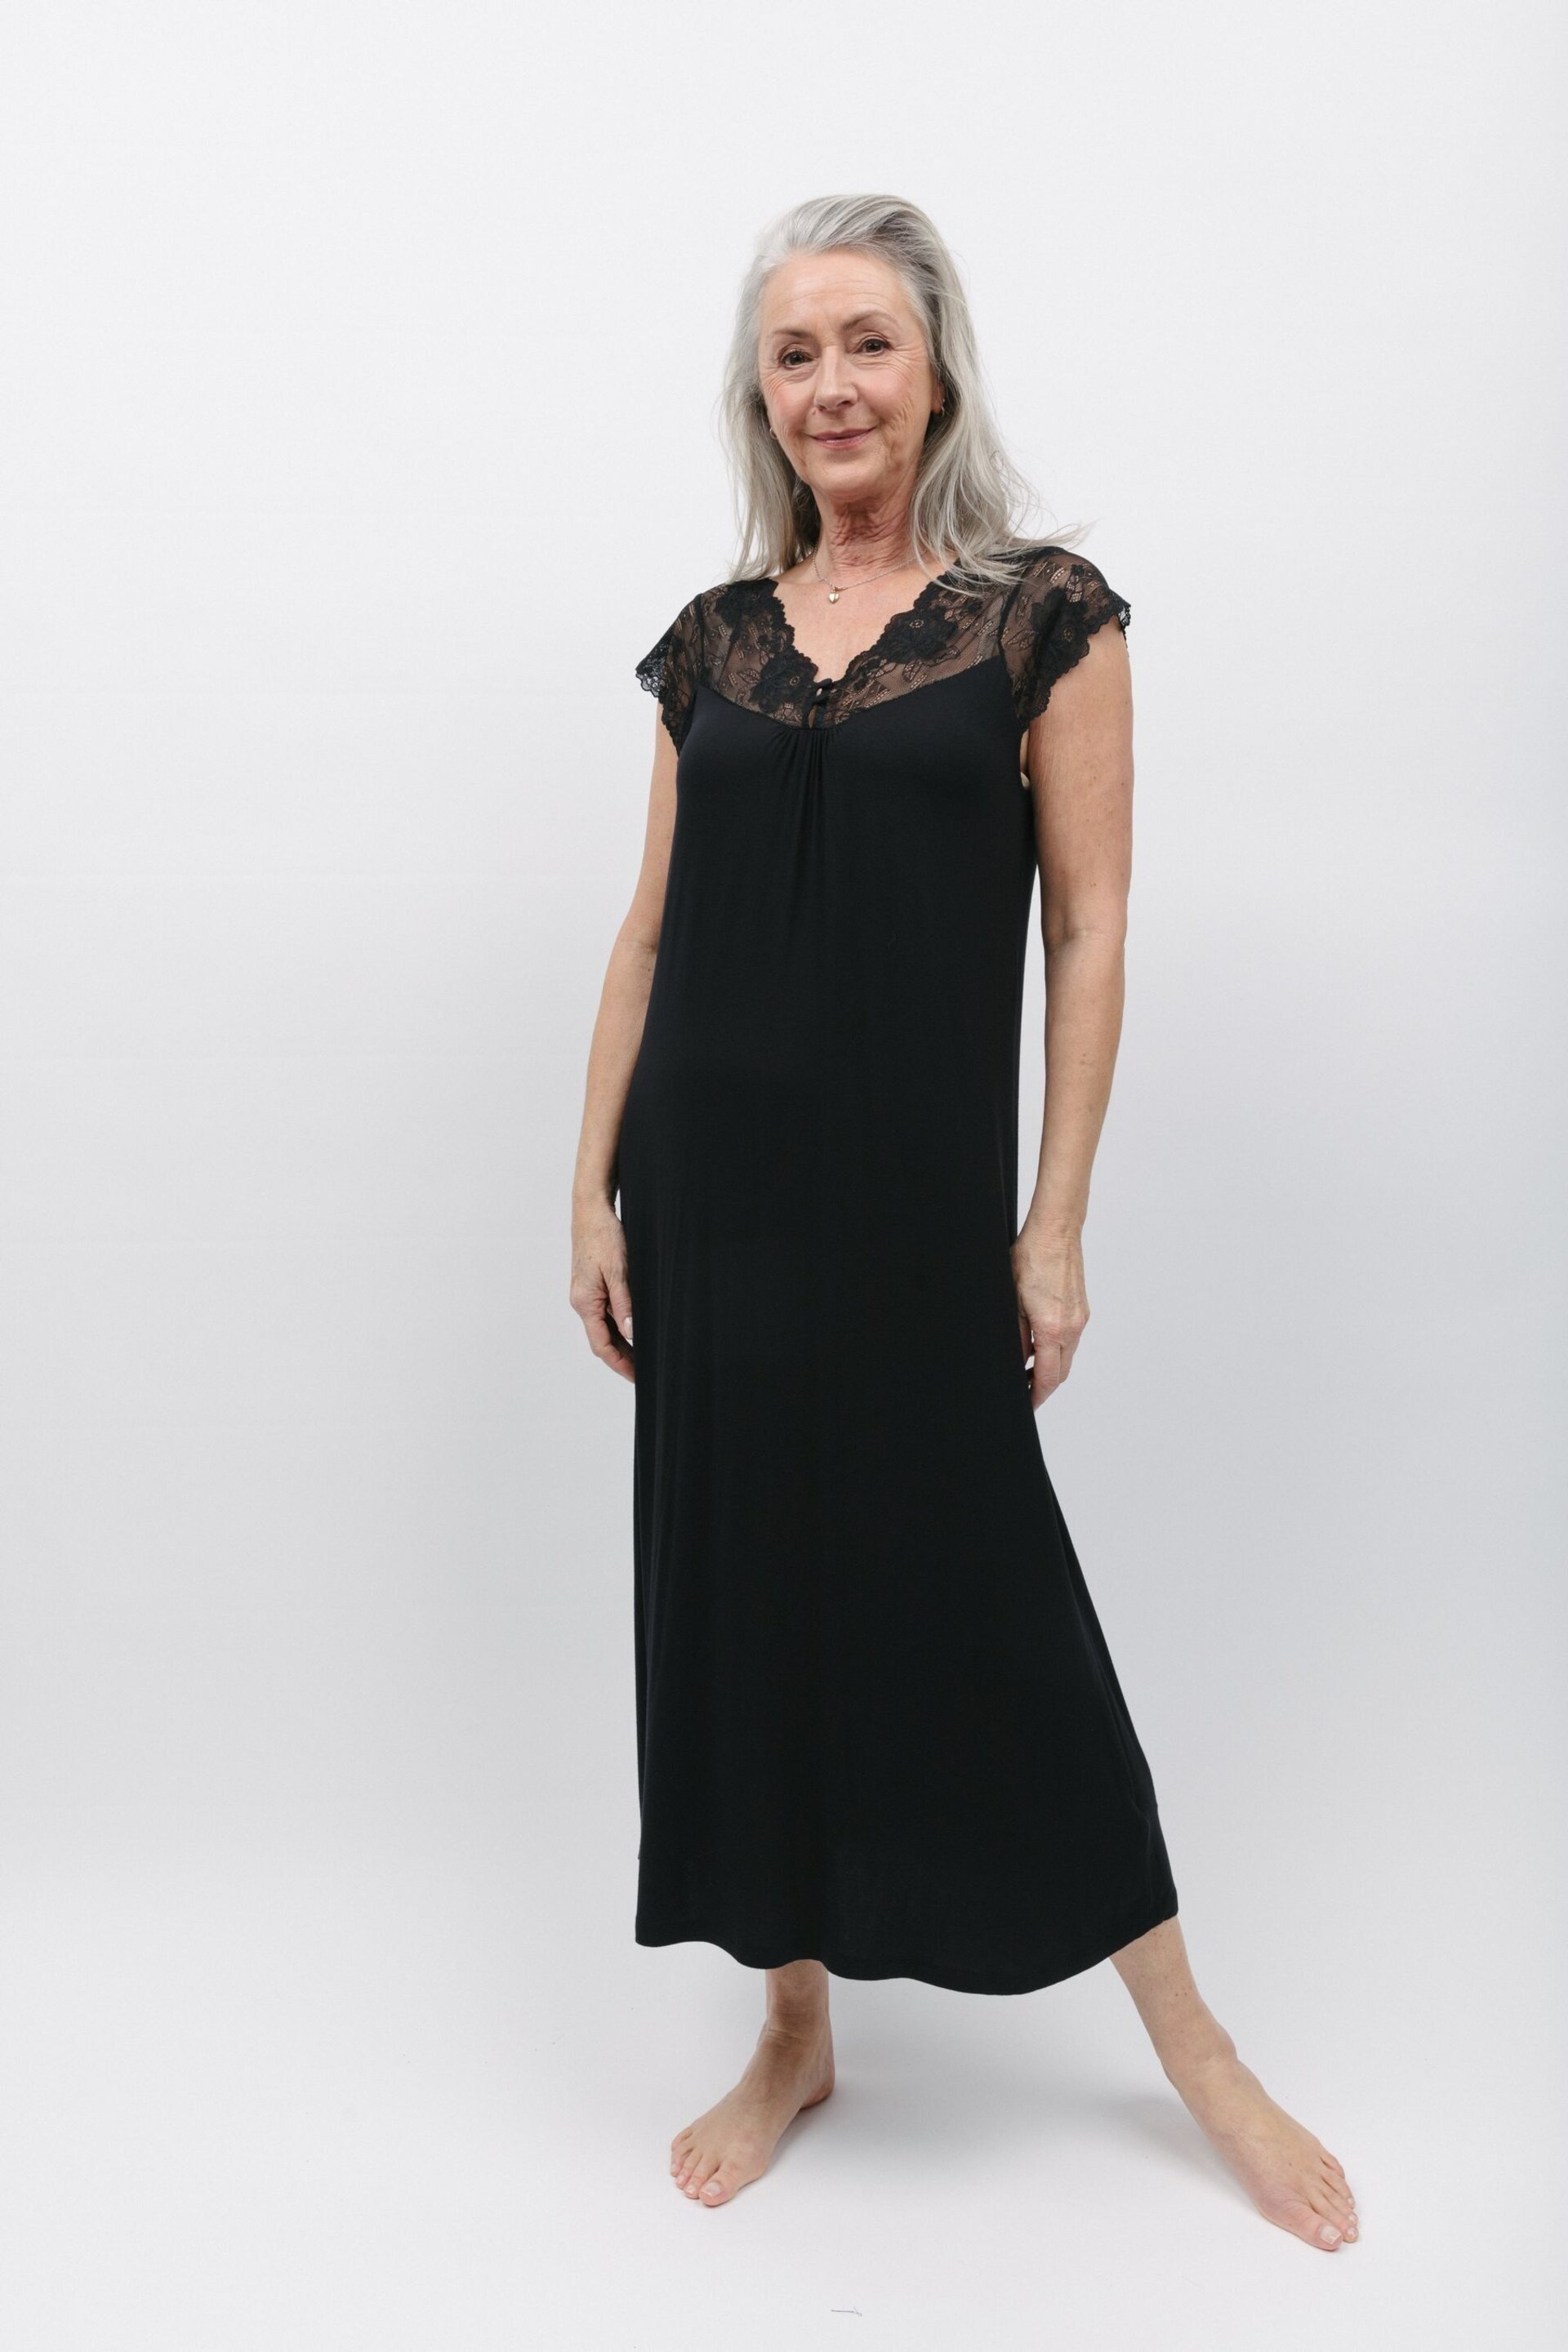 Nora Rose Black Jersey Long Nightdress - Image 2 of 4